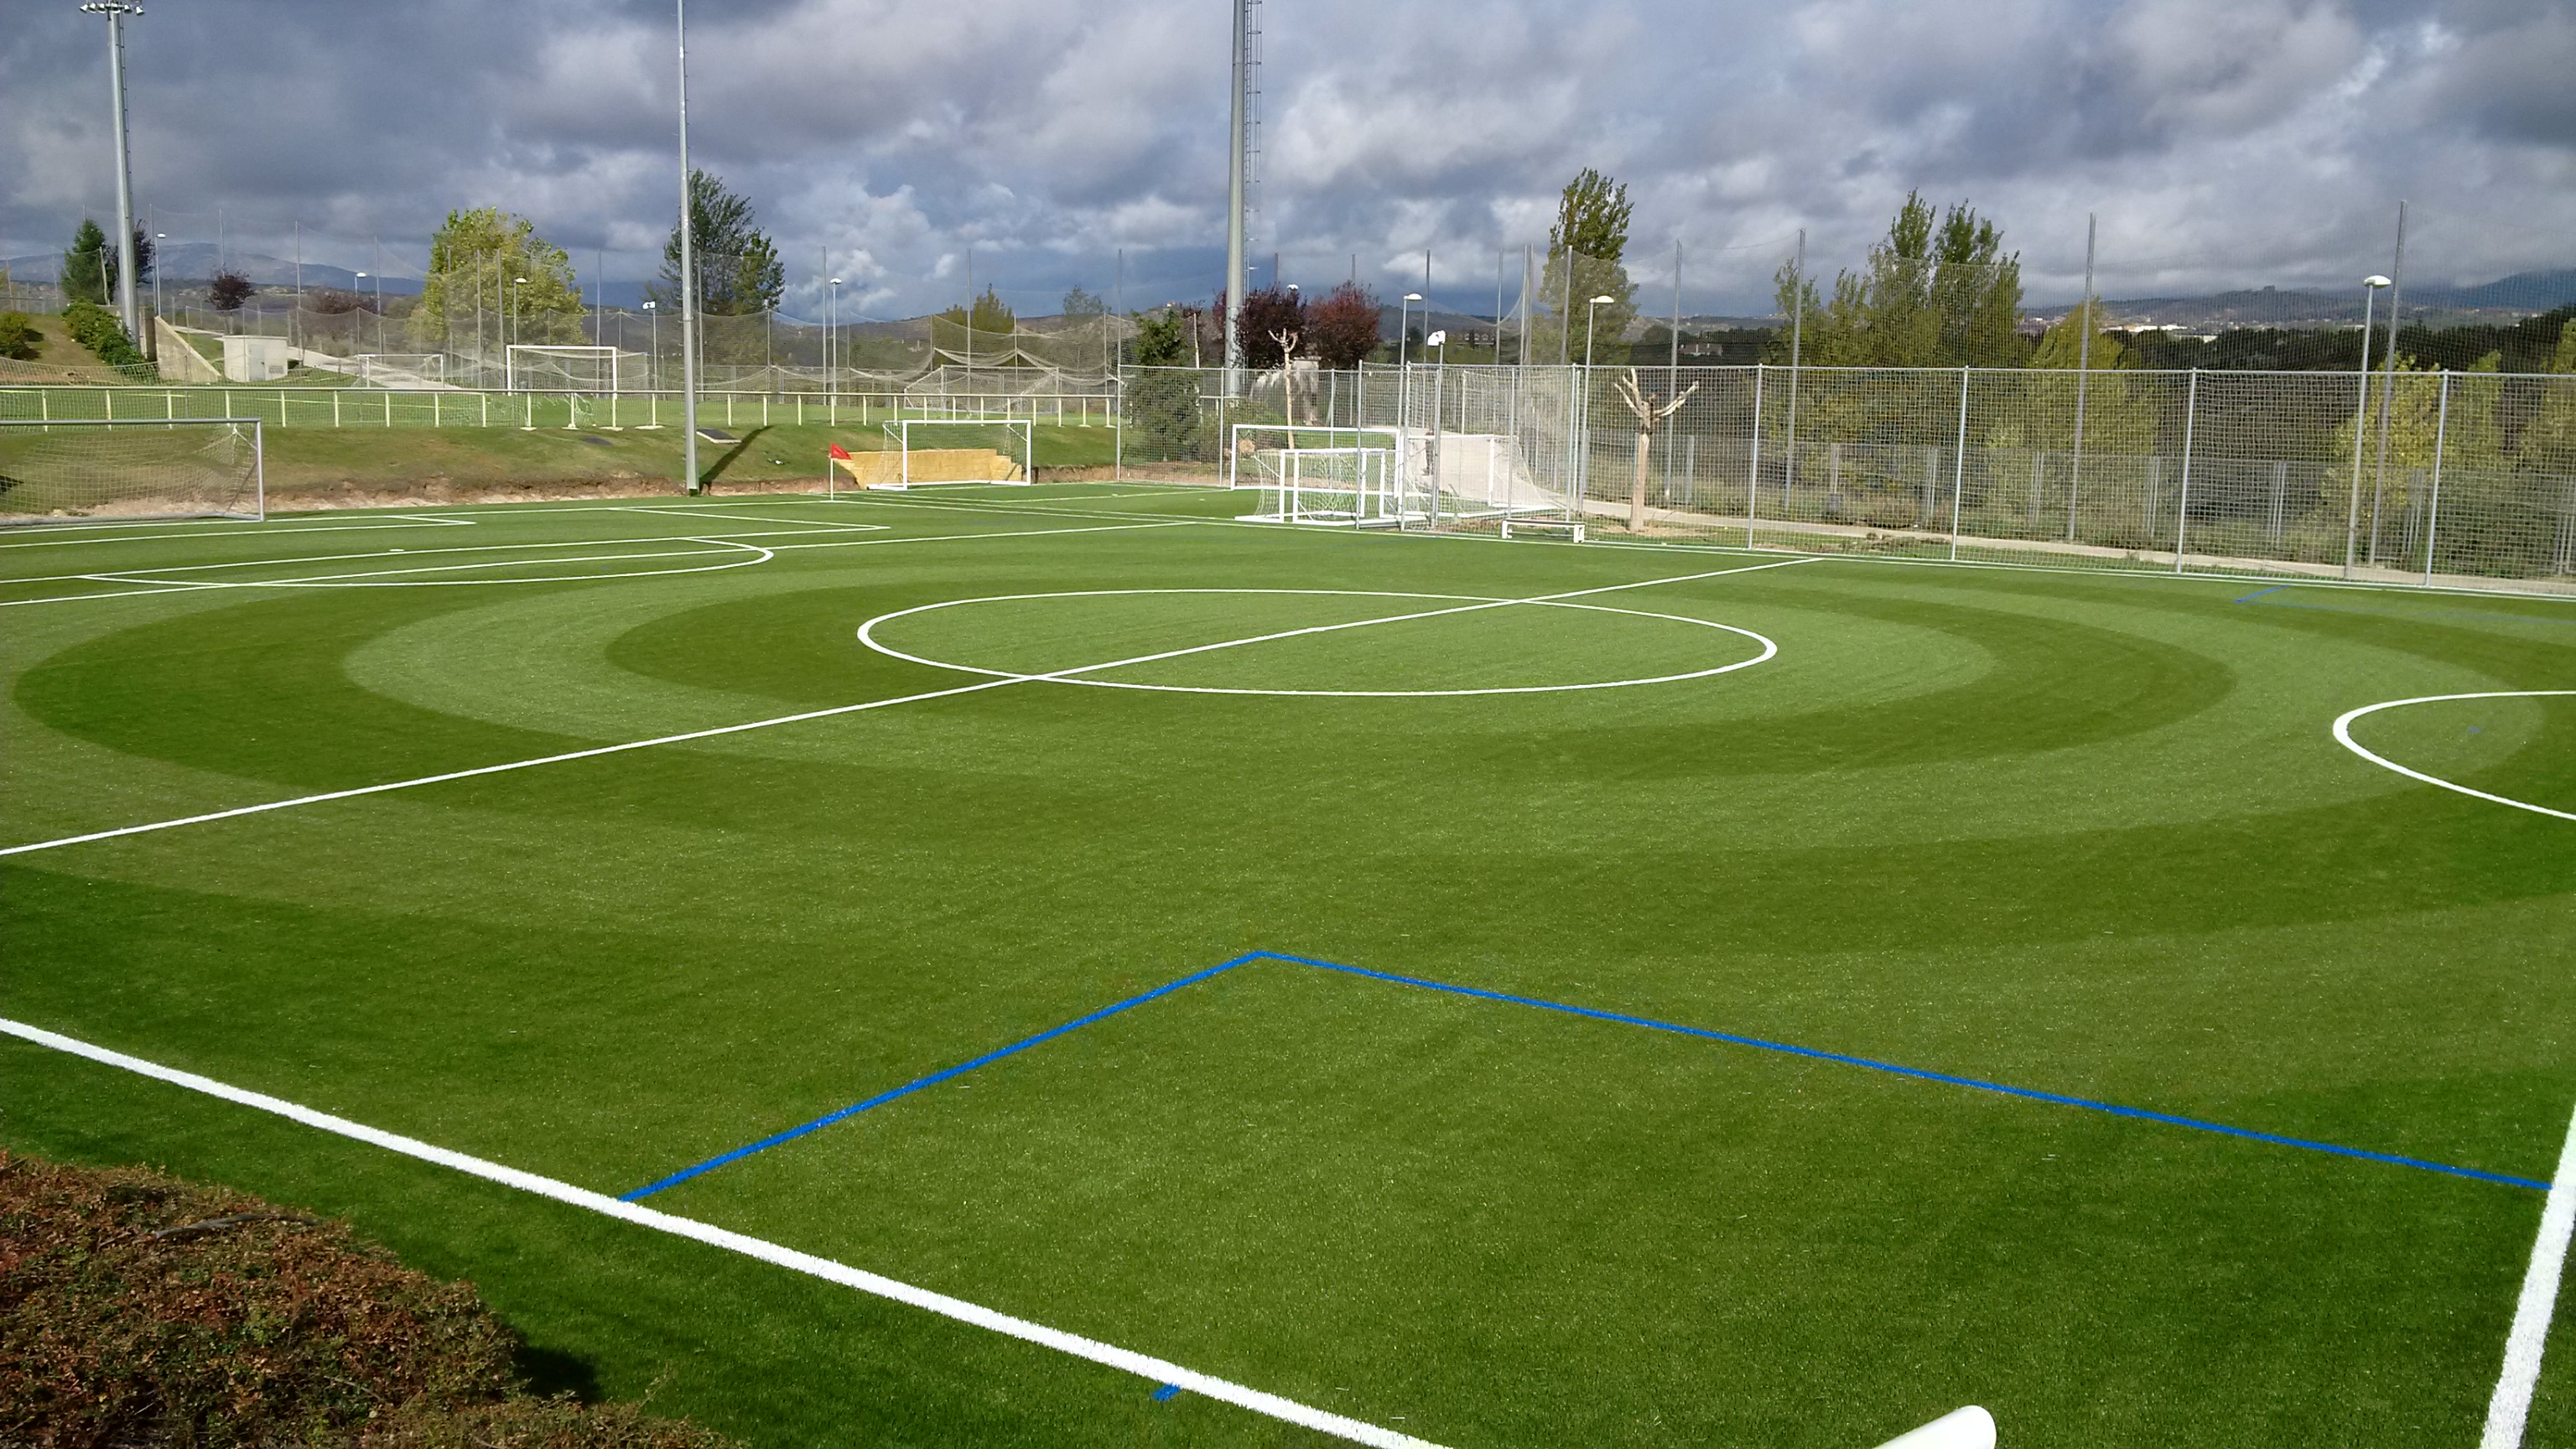 Campo de Fútbol 7 y Area de Entrenamiento de Porteros en la Ciudad del Fútbol – RFEF, Las Rozas, Madrid Image